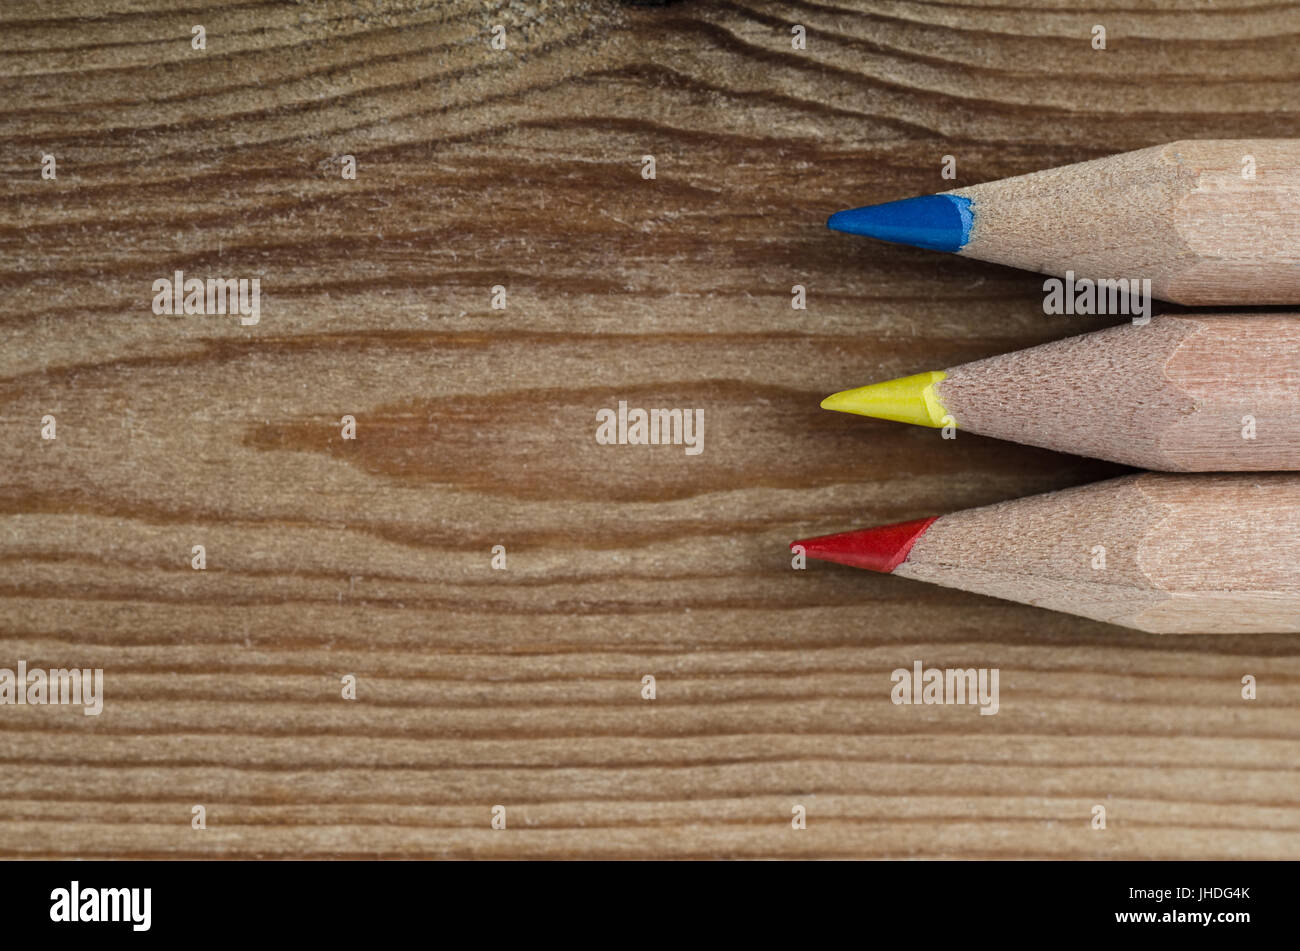 Trois crayons représentant les couleurs primaires rouge, jaune et bleu avec des conseils pointant vers la gauche en l'espace de copie sur du bois clair. Banque D'Images